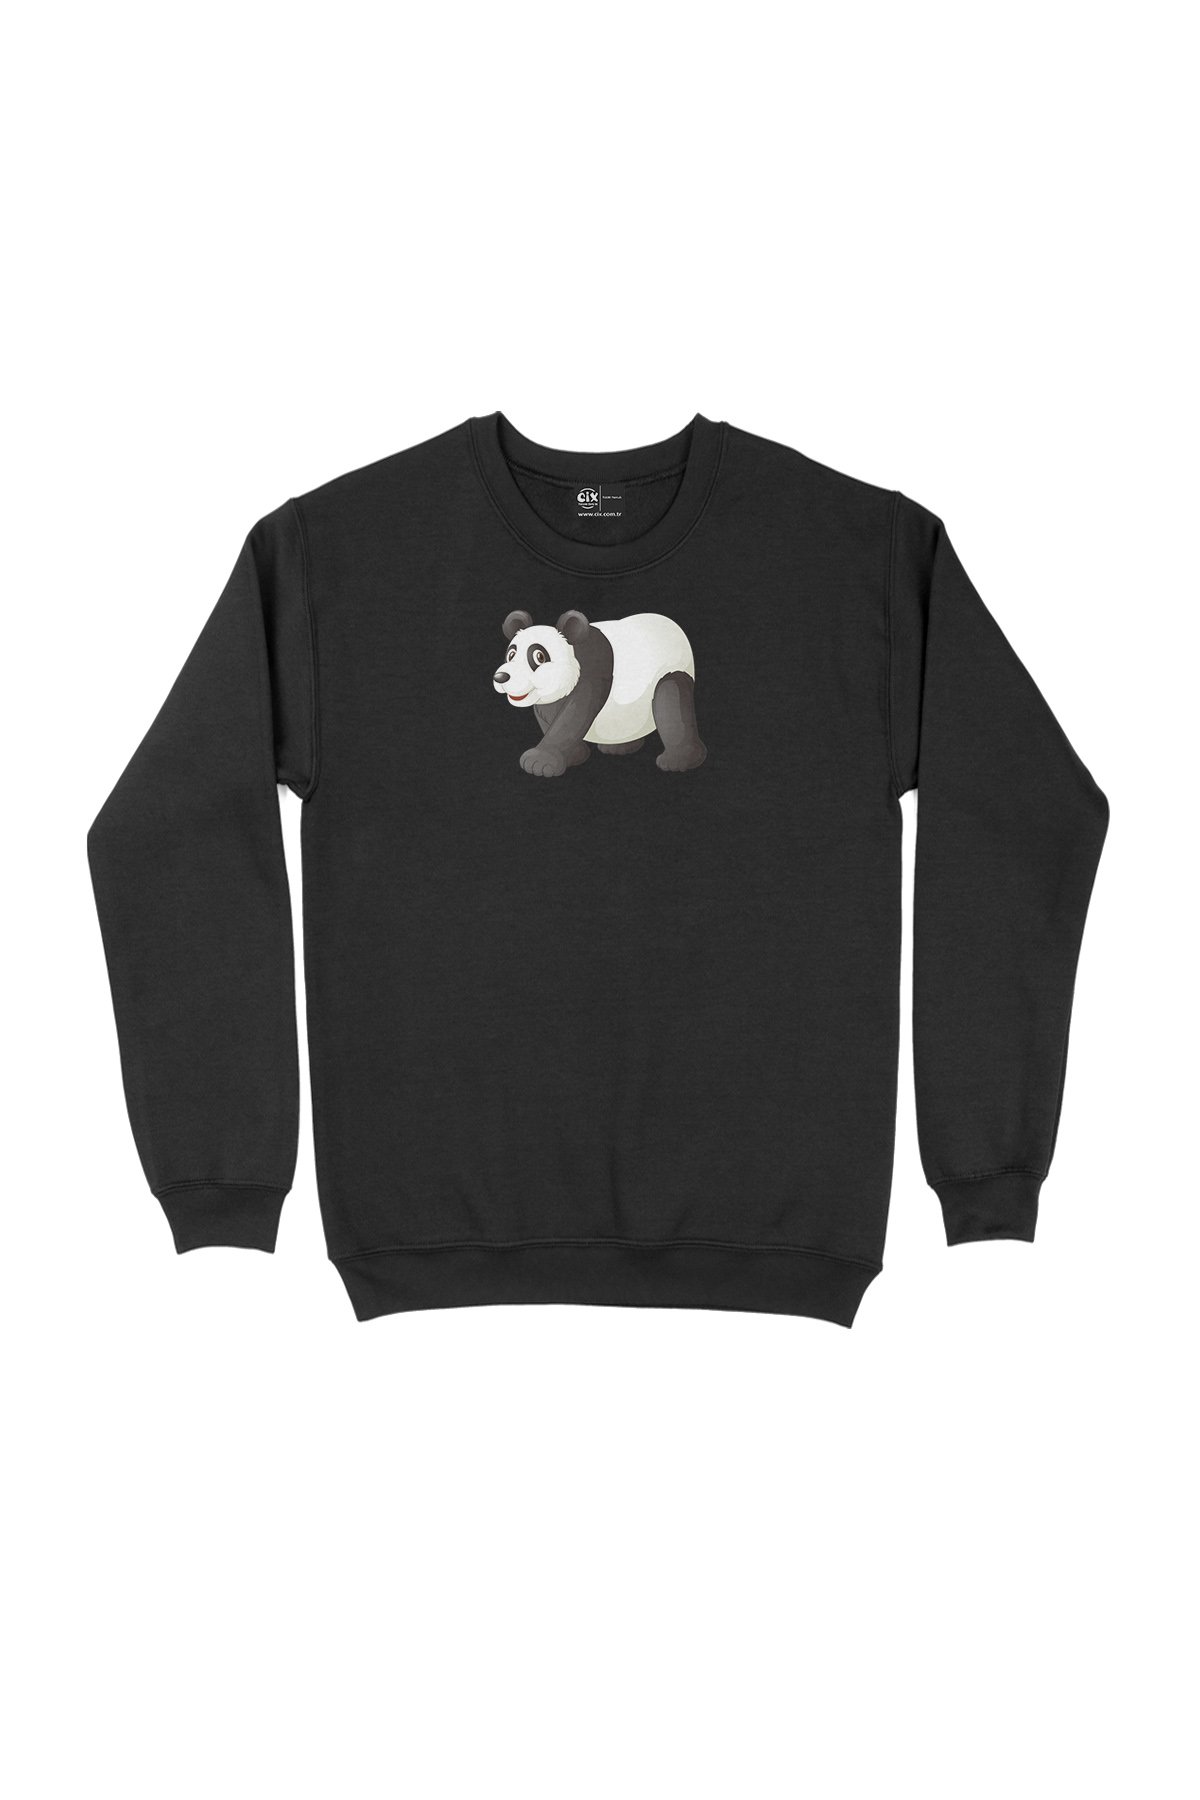 Tatlı Panda Tasarım Siyah Sweatshirt - Ücretsiz Kargo